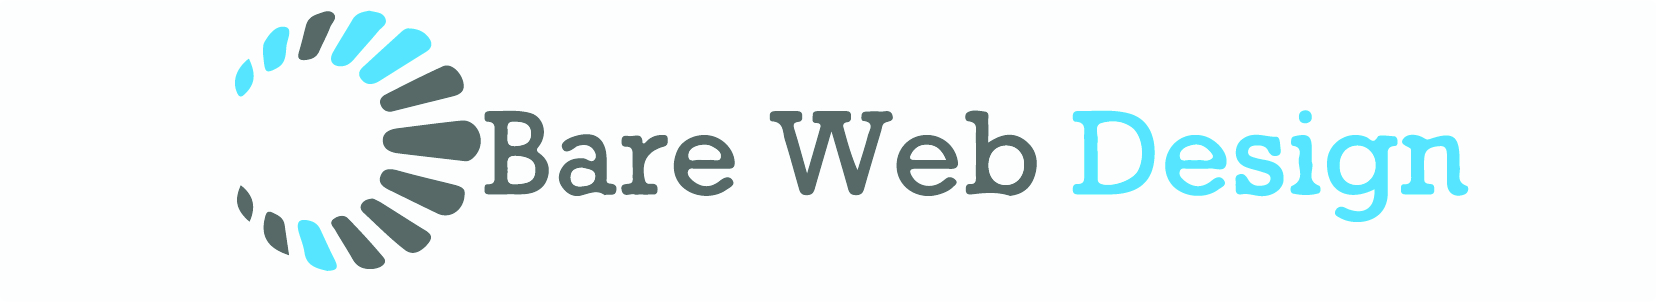 Bare Web Design